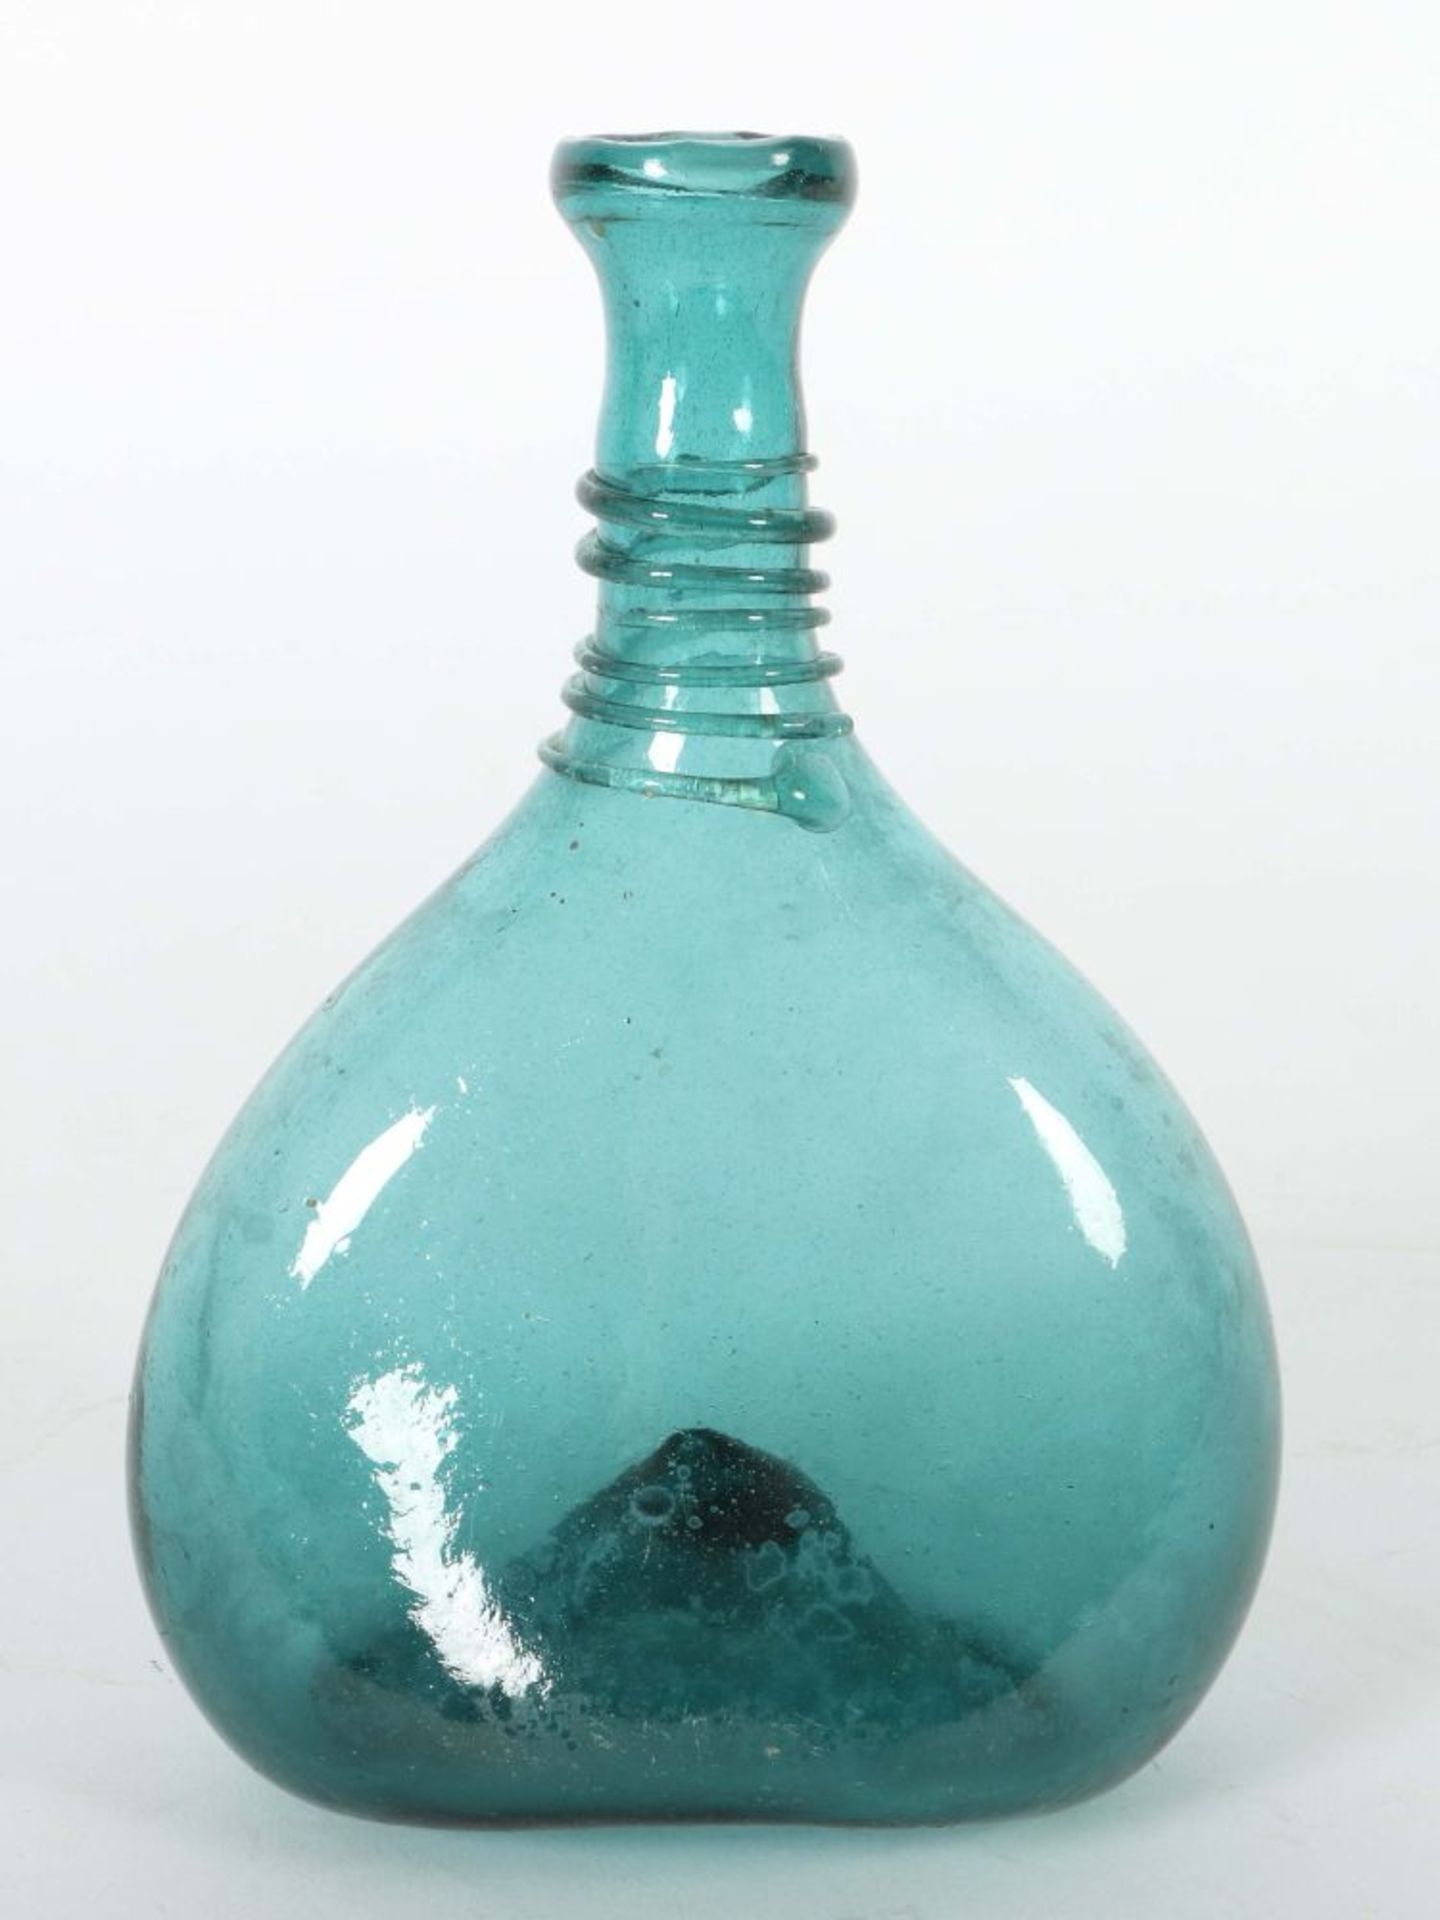 Fadenglas-Flasche wohl 18. Jh., türkis - Bild 2 aus 2